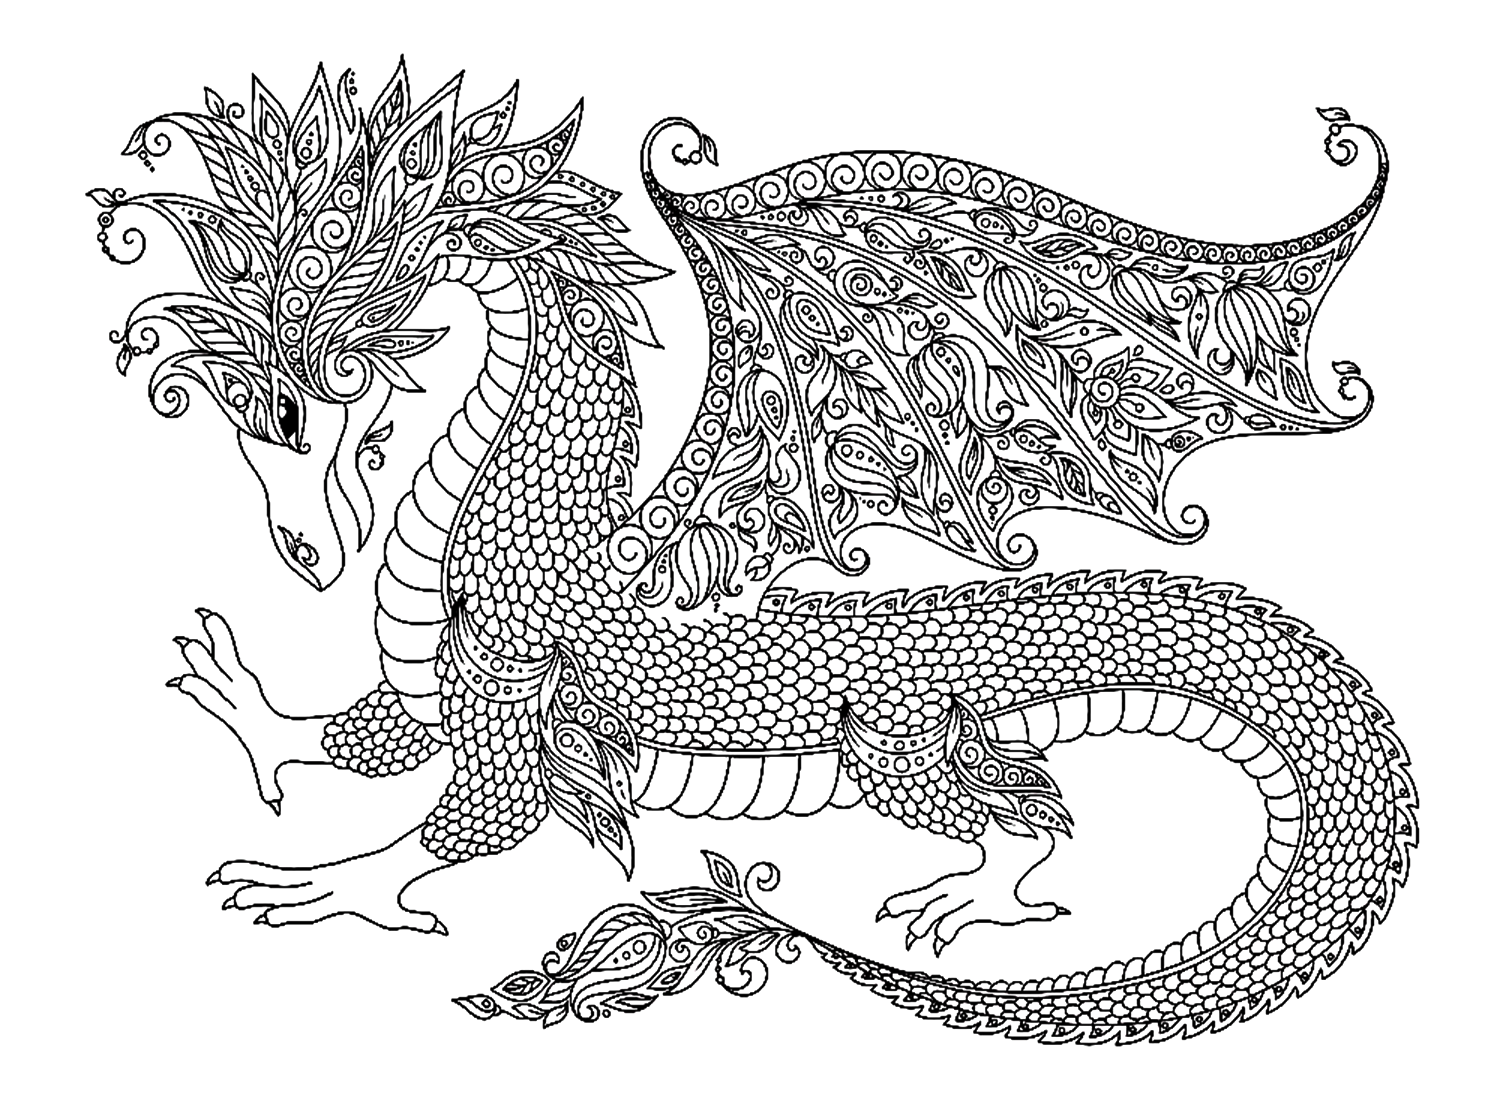 Páginas para colorear de dragones para adultos de Dragon